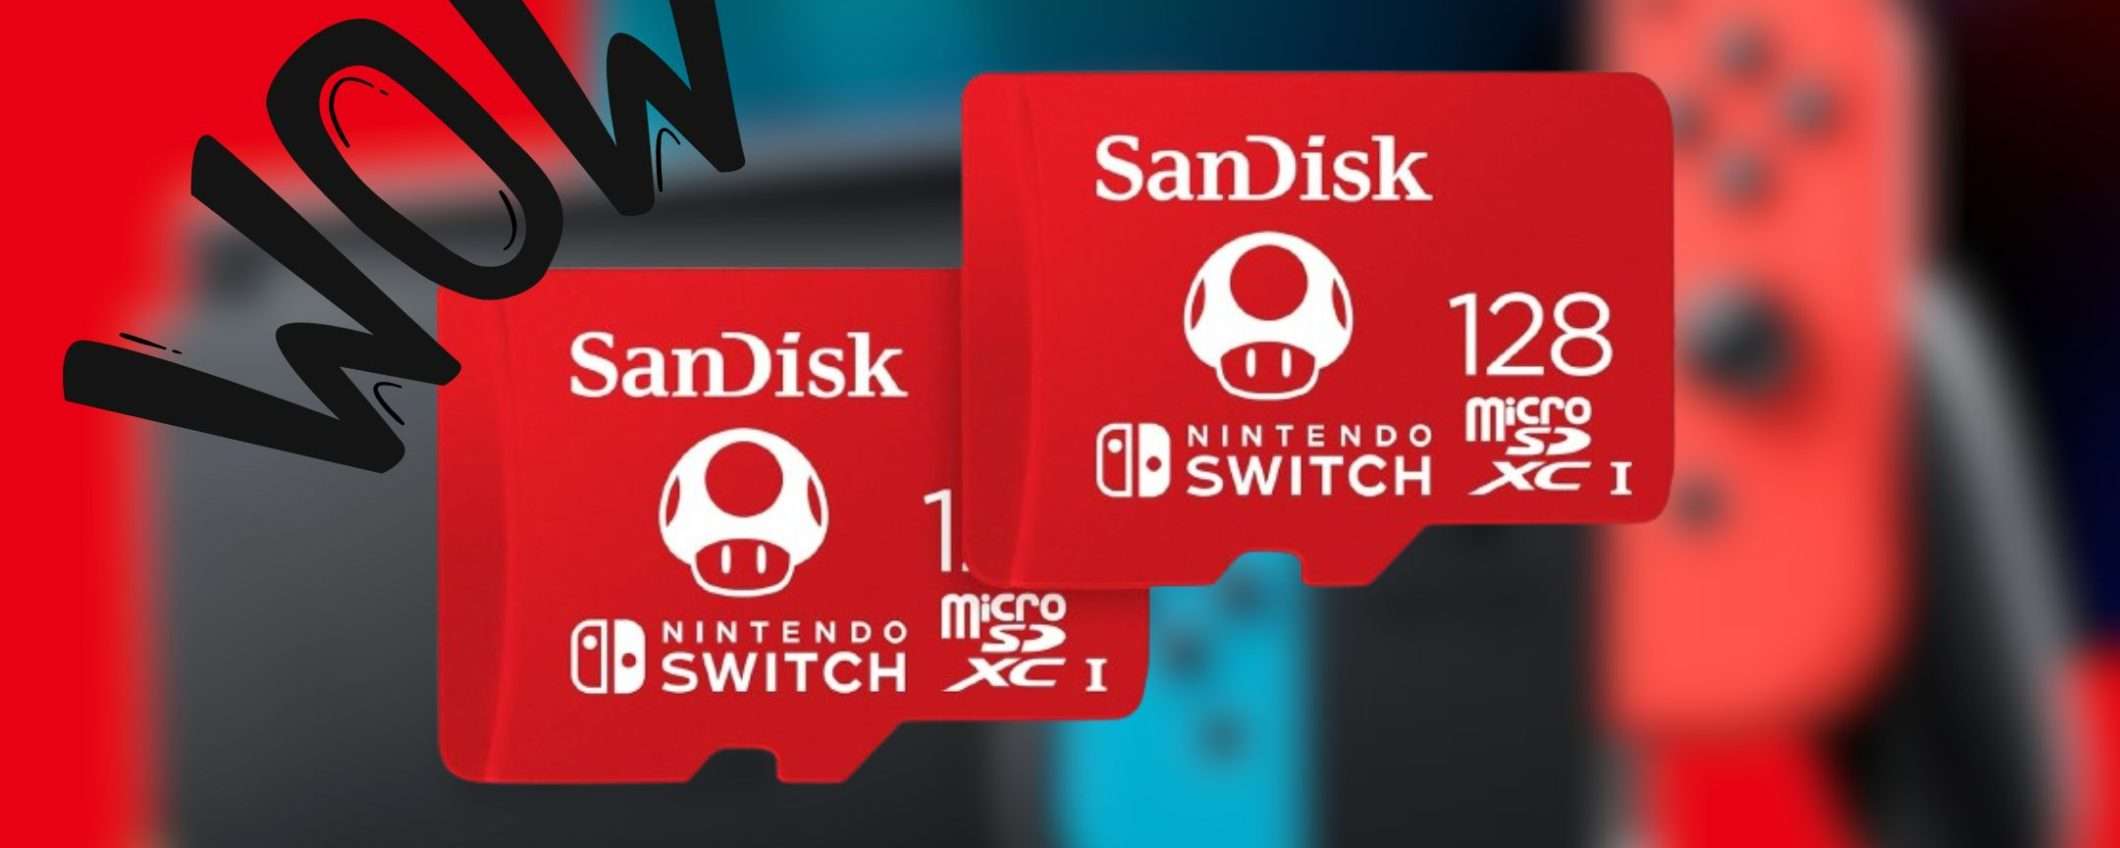 2 MicroSD SanDisk da 128GB per Nintendo Switch a soli 45€? PREZZO FOLLE di Amazon